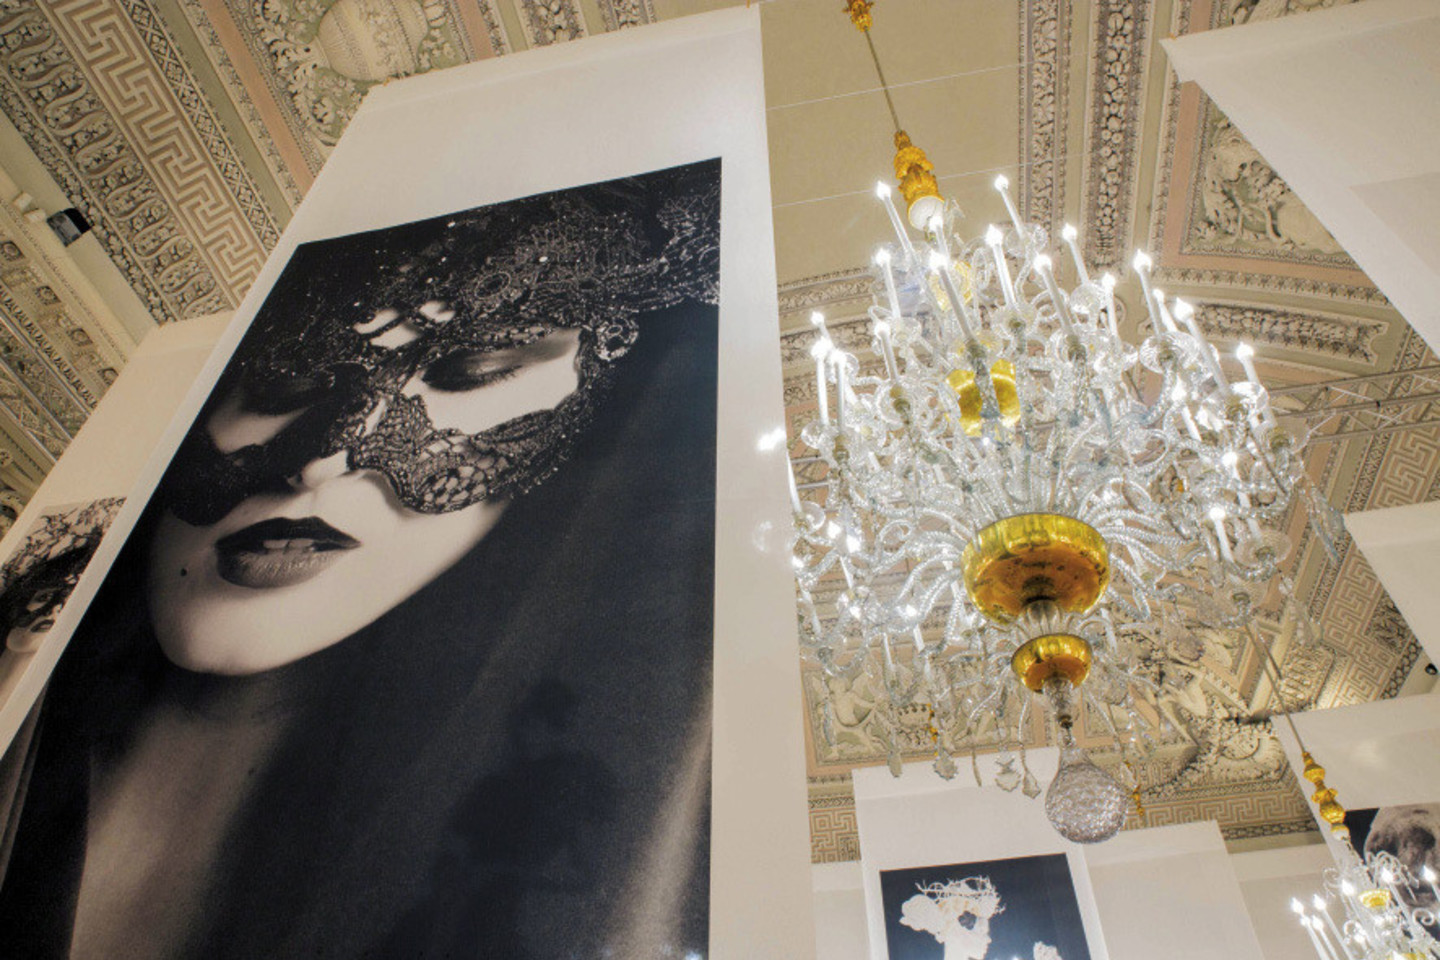 Karlo Lagerfeldo parodos ekspozicija vingiuoja per gražiausias Florencijos Pitti rūmų menes.<br>„Proj3ct Studio“ nuotr.